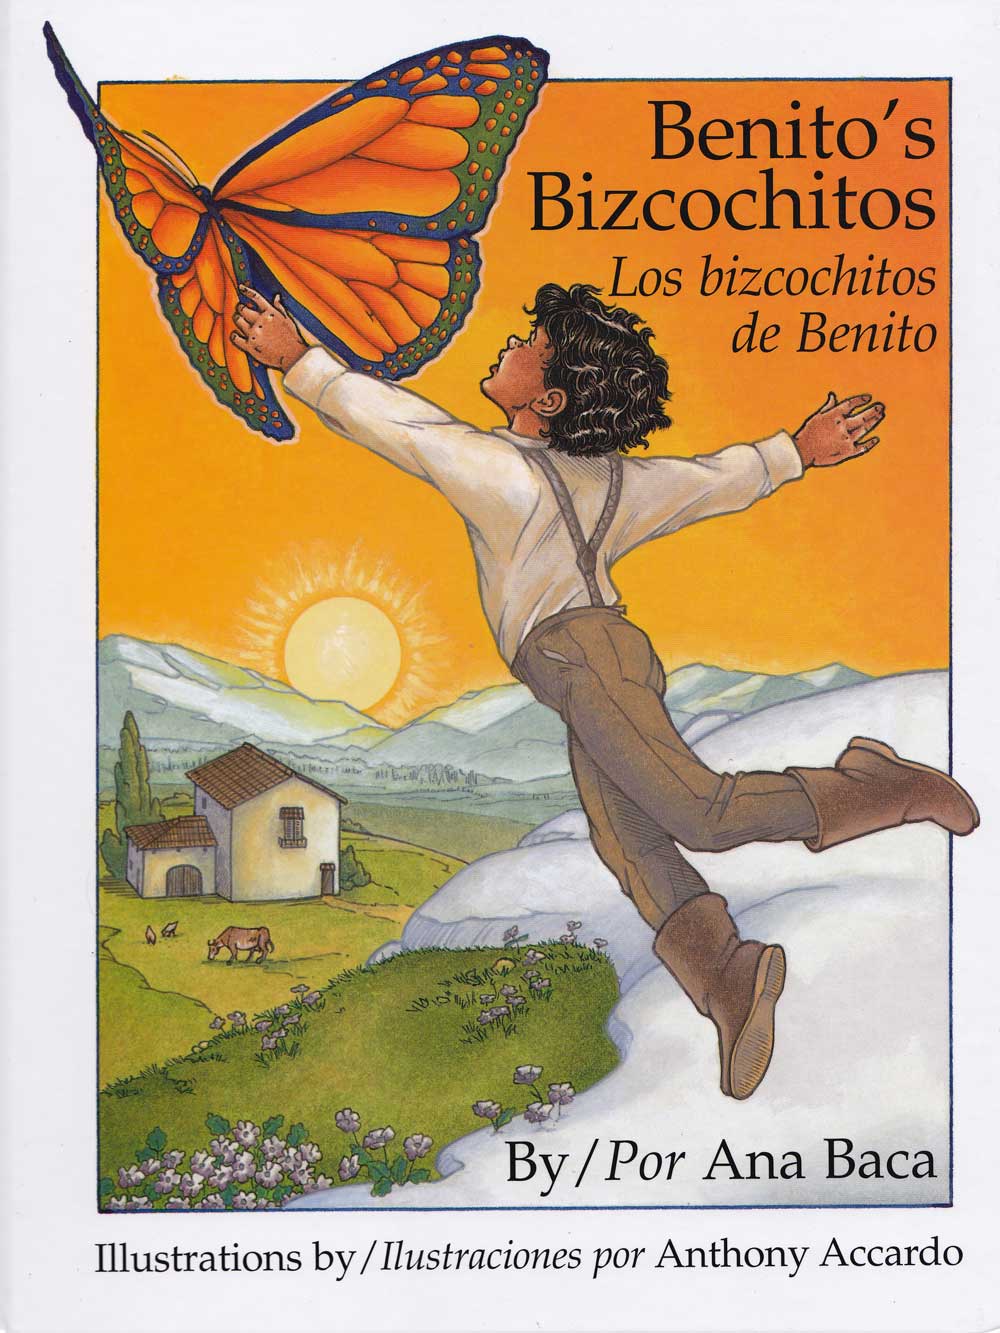 Los bizcochitos de Benito - Benitos Bizcochitos, Del Sol Books